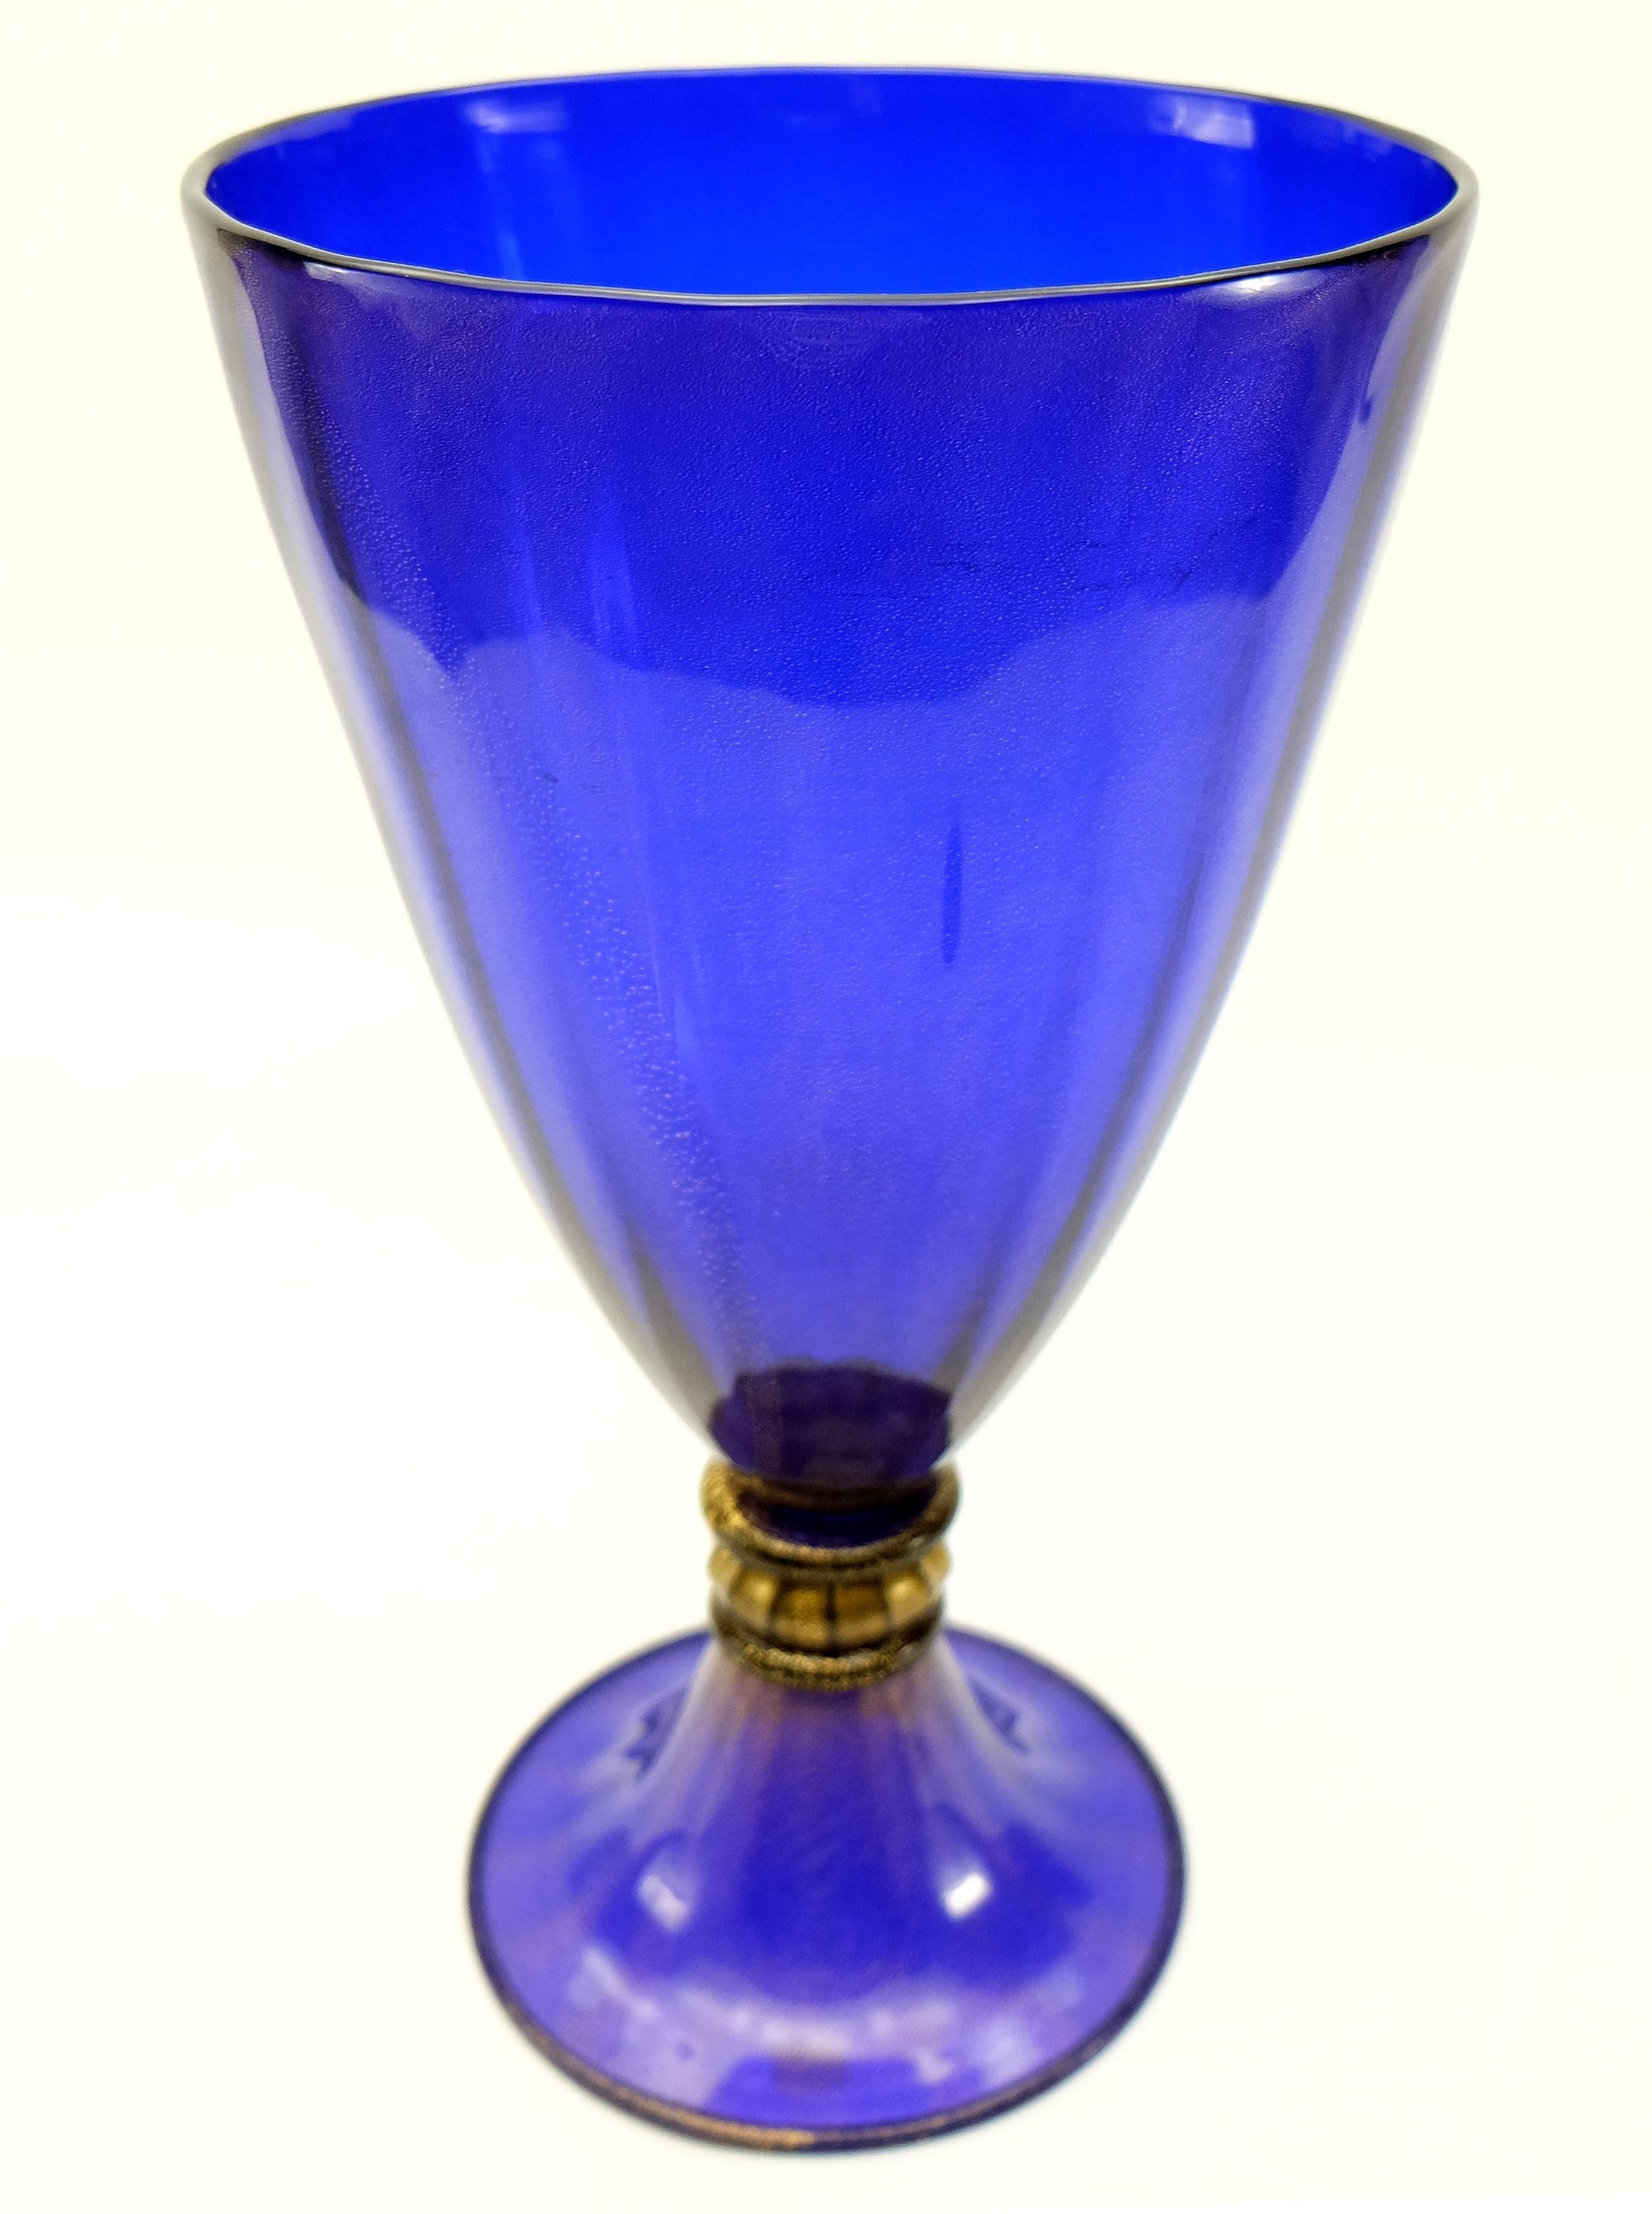 Vase aus Muranoglas mit Goldeinlage von Gabbiani Venezia, Italien

Zum Verkauf angeboten wird eine kobaltblaue Vase aus Muranoglas von Gabbiani, die mit Gold durchsetzt ist. Die Gold-Infusion findet sich im gesamten Blau sowie in dem transparenten